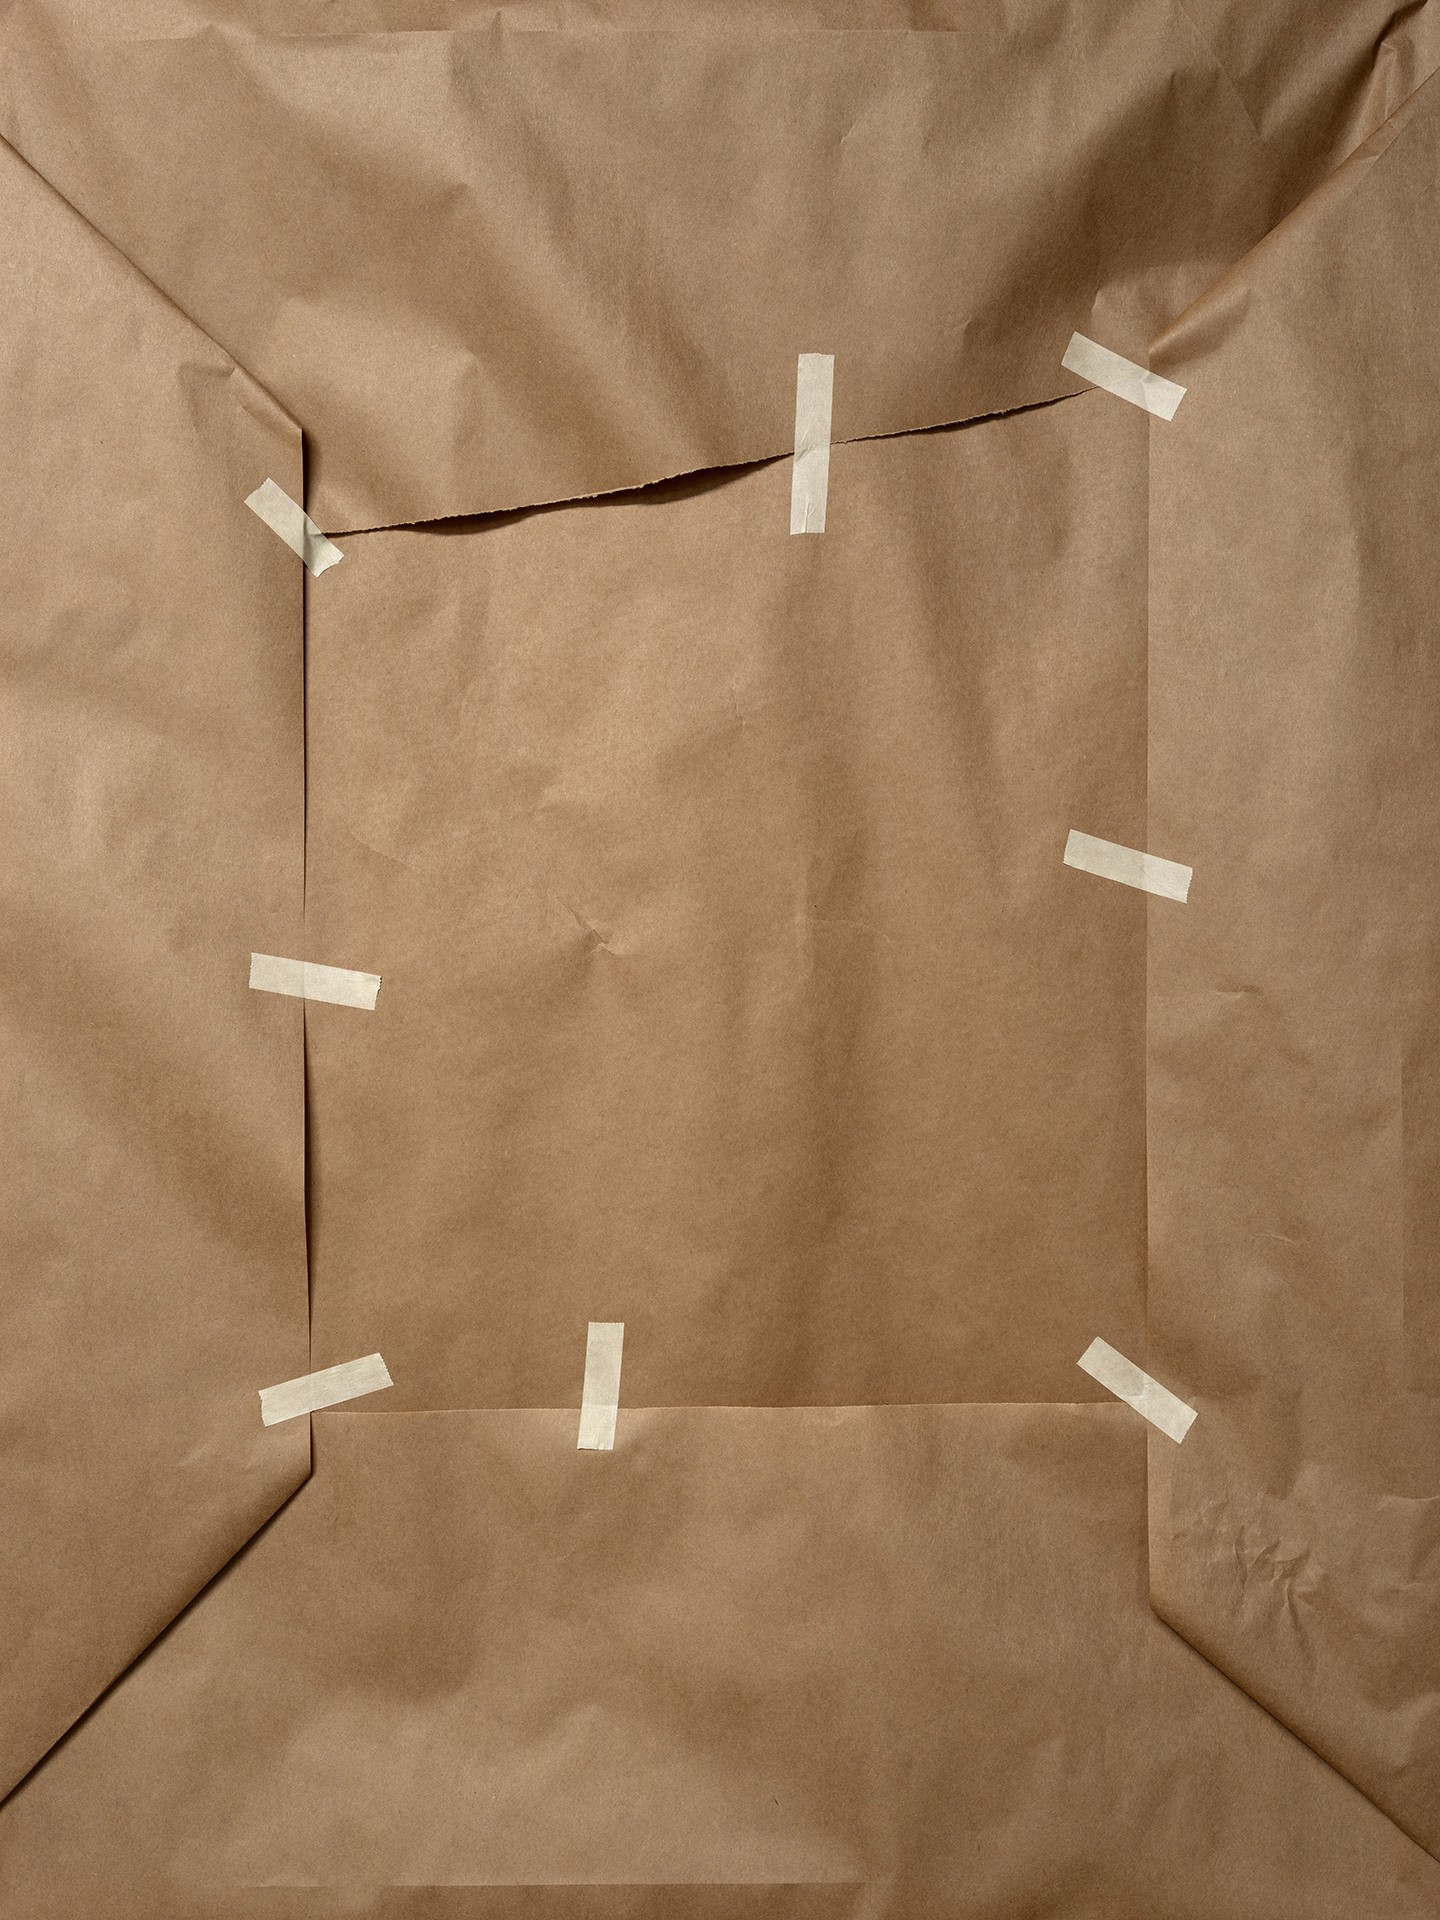 Craft Paper and Tape by Jordan Kessler